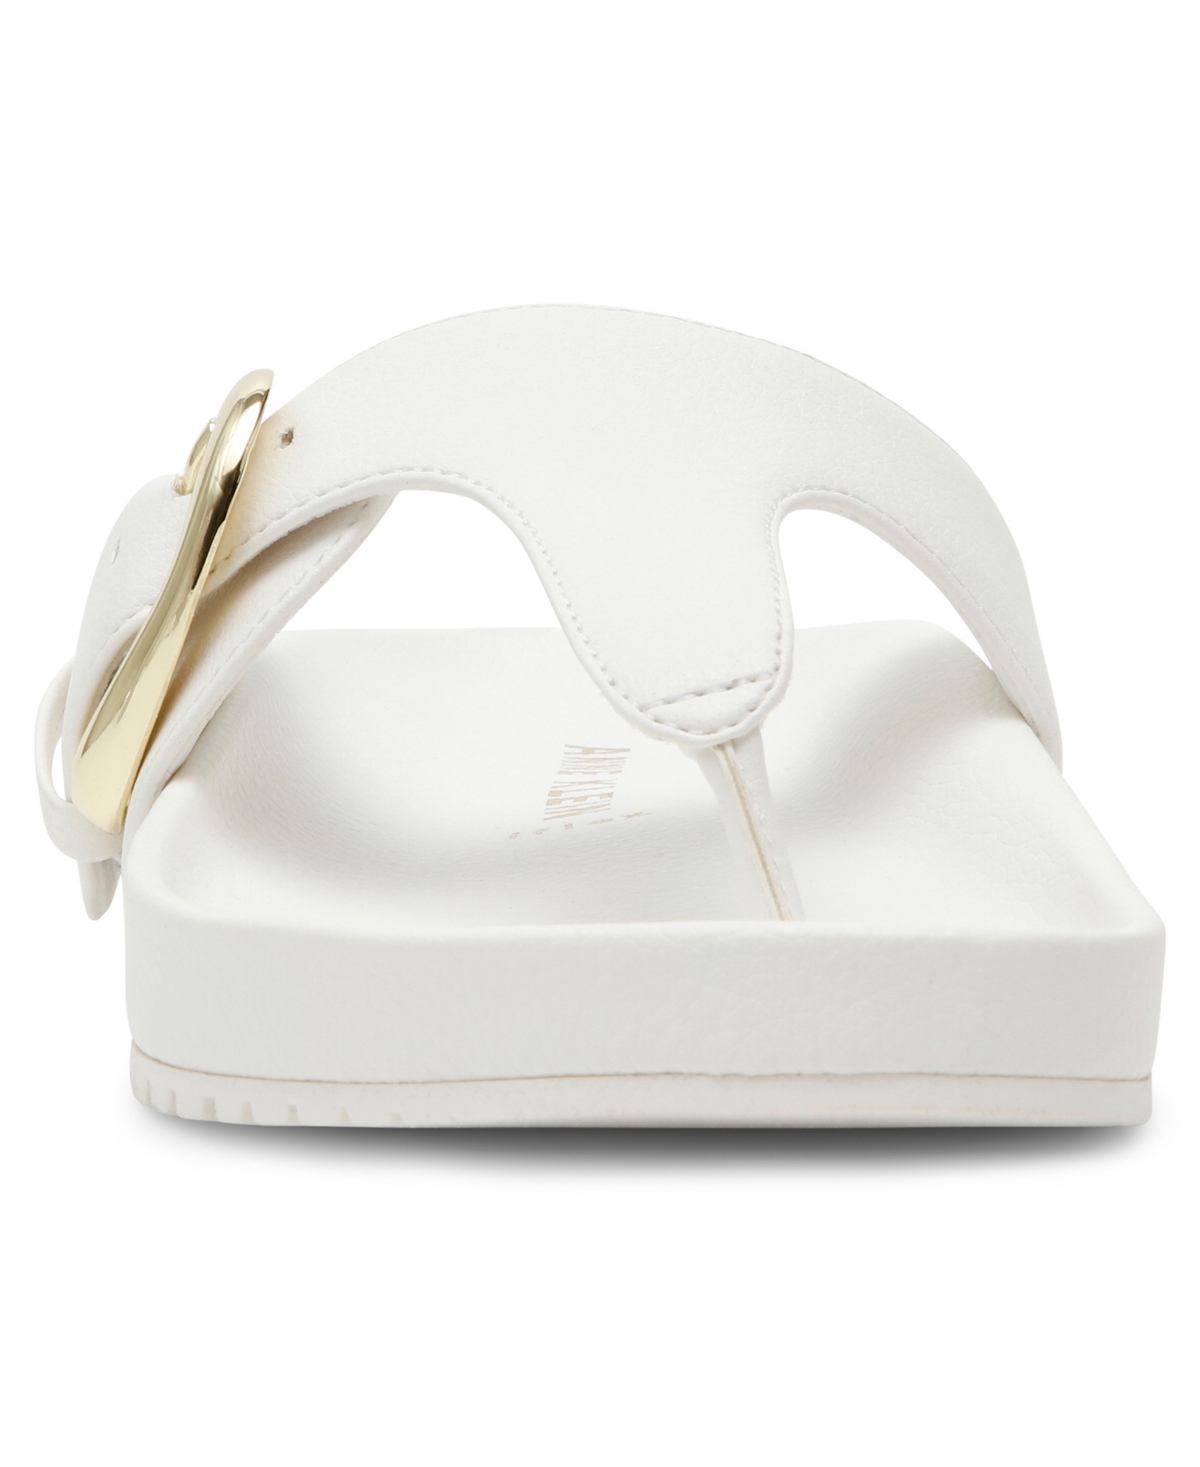 Shop Anne Klein Women's Dori Flat Sandals In White Smooth